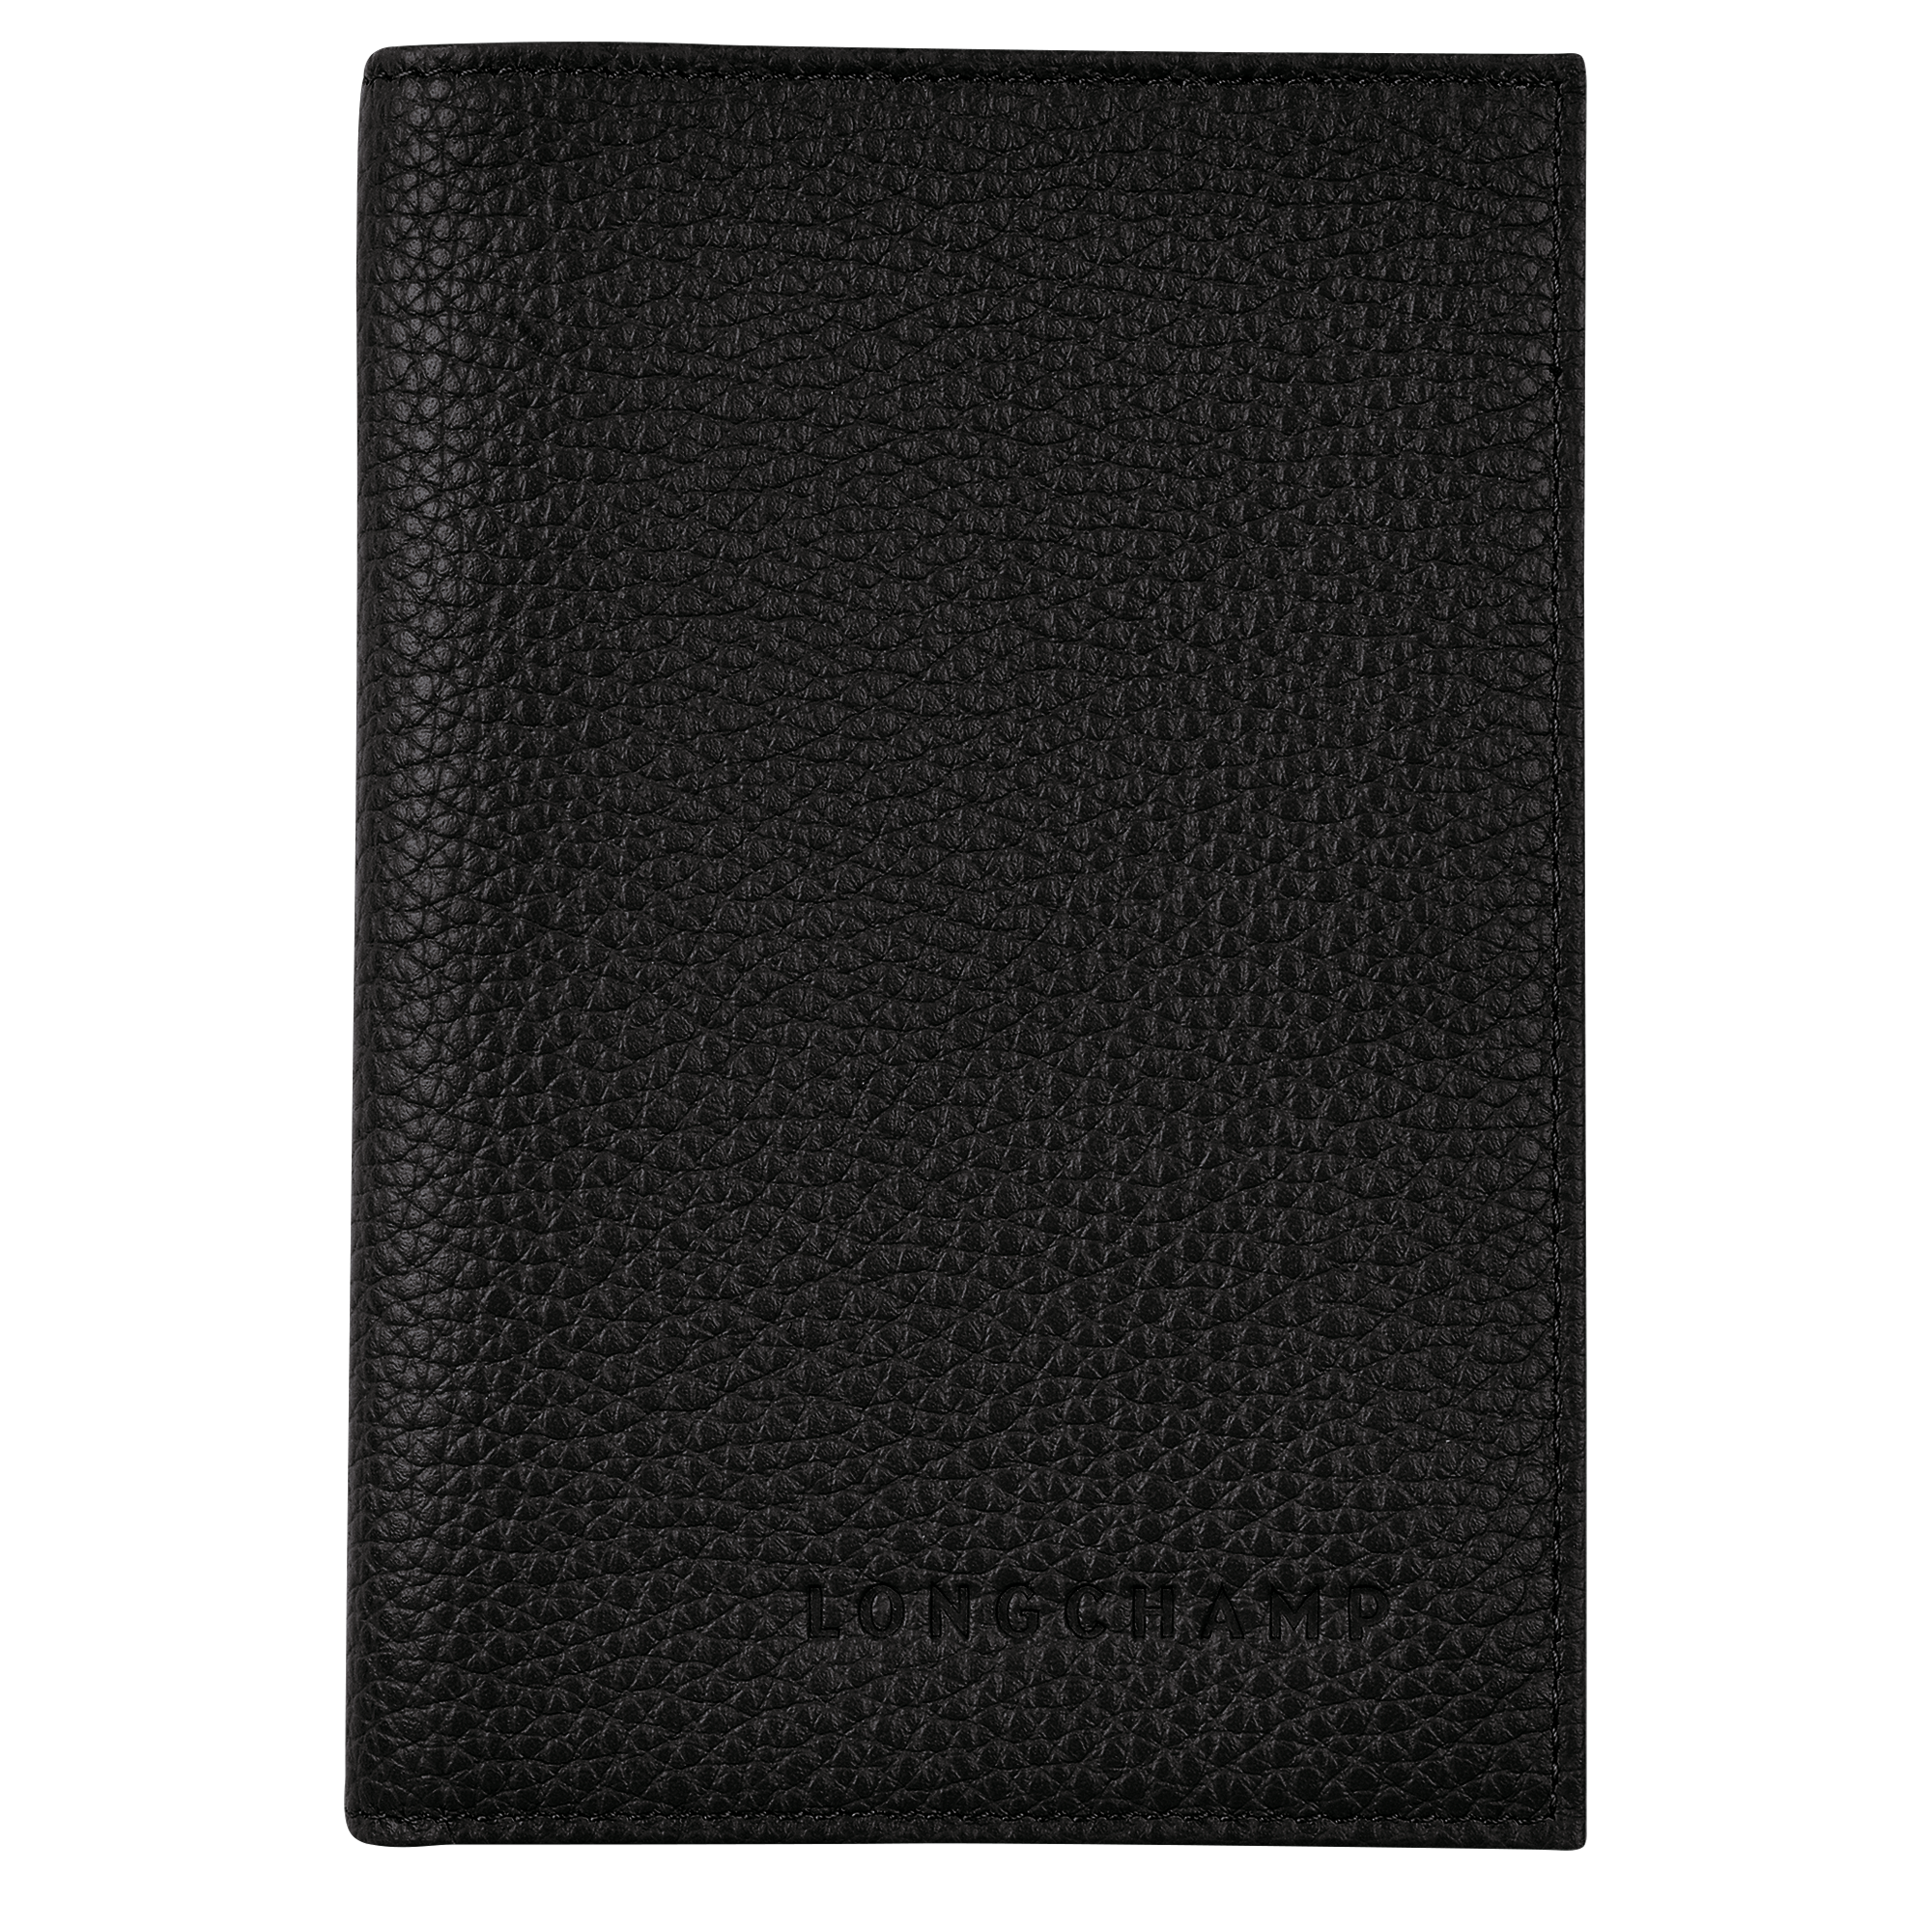 Le Foulonné Passport cover, Black